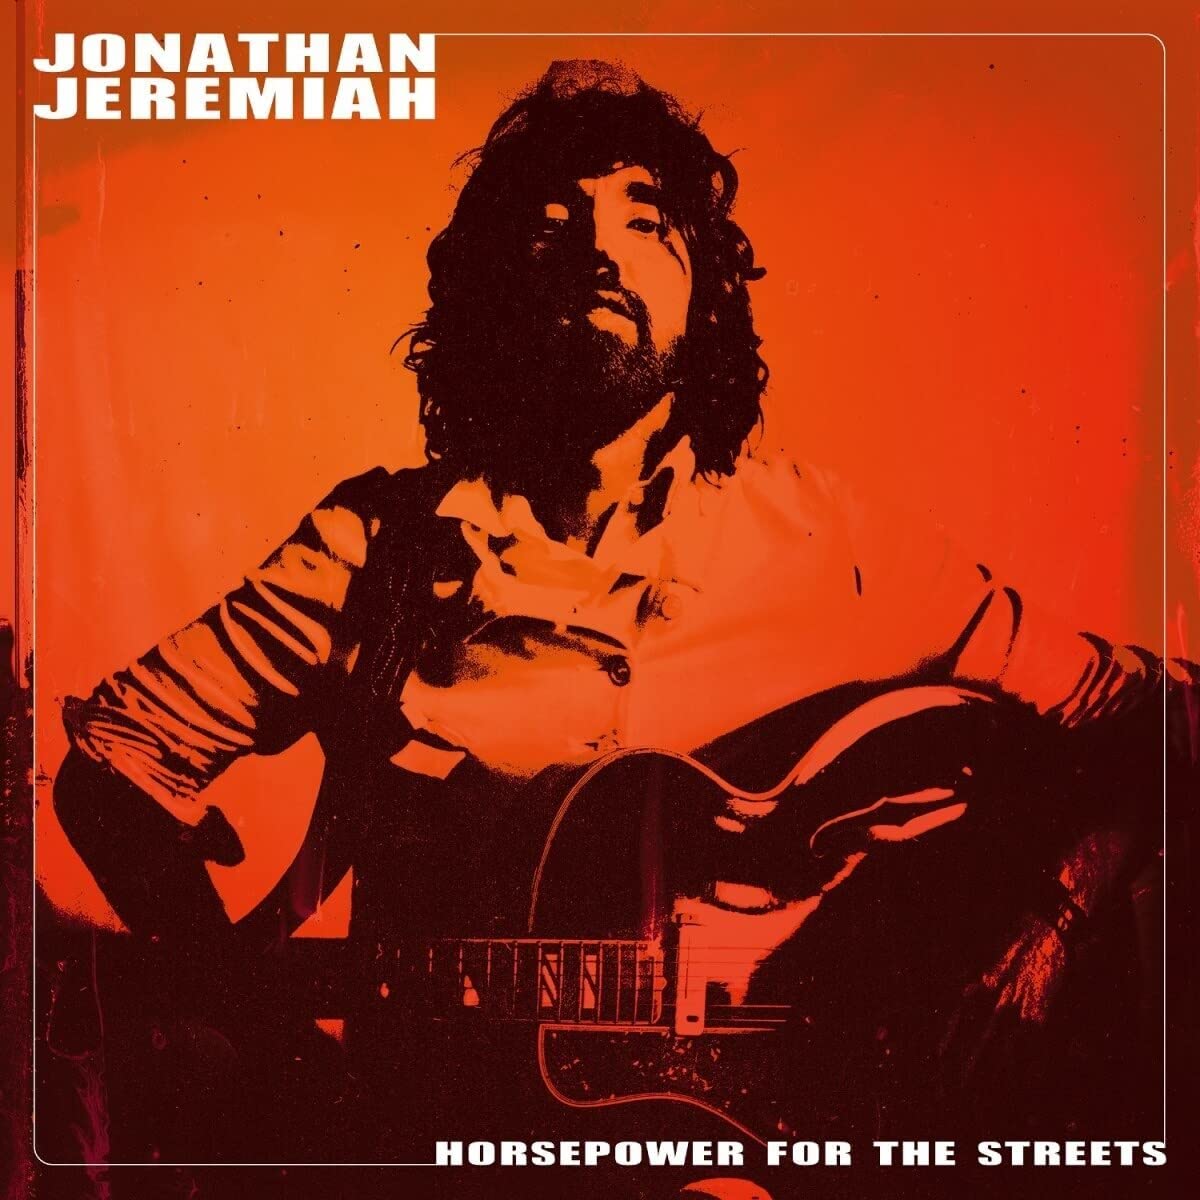 Jonathan Jeremiah album Horsepower For The Streets